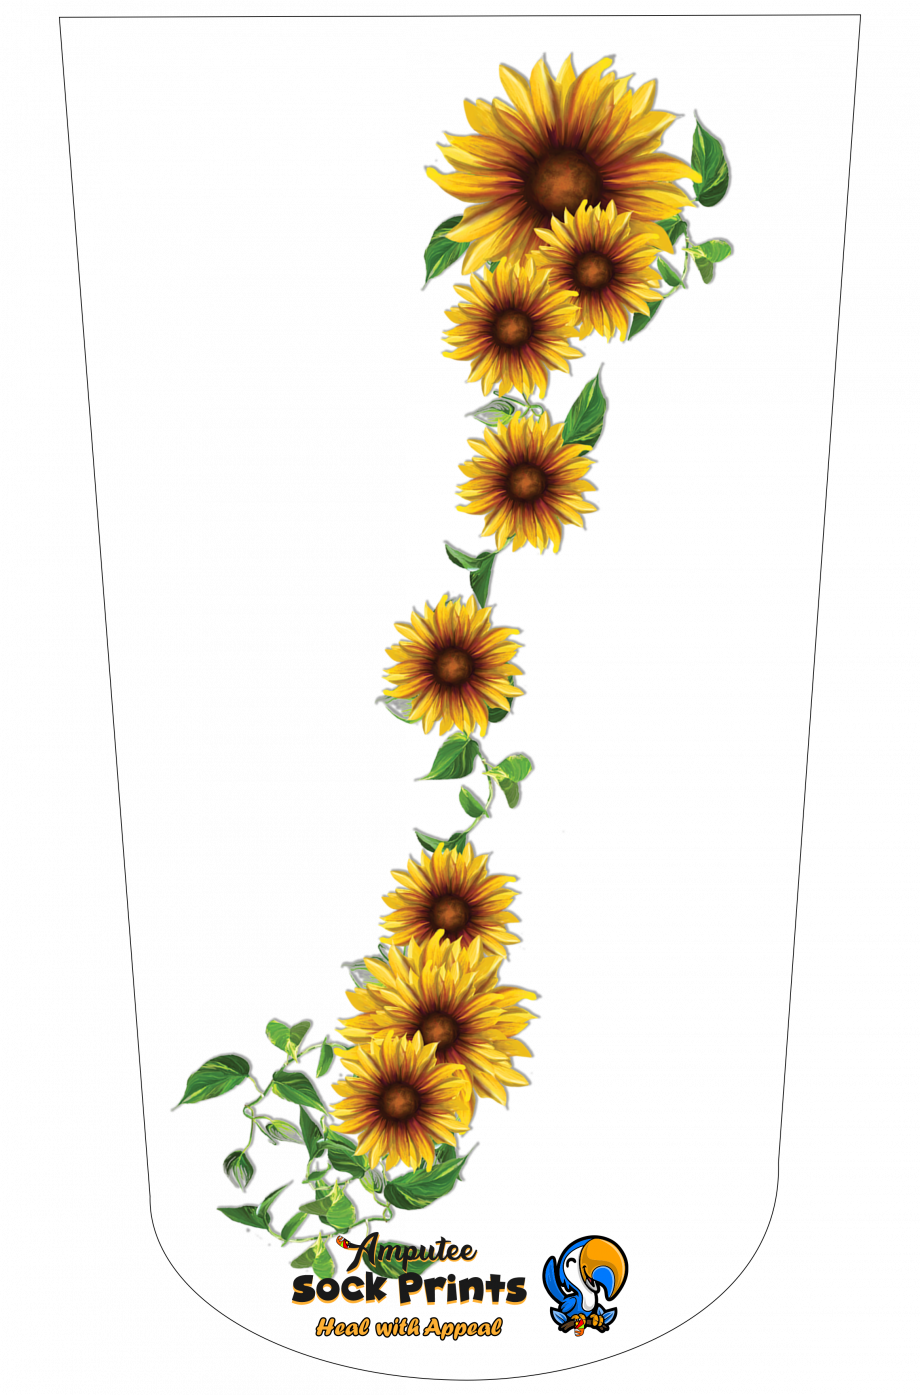 Sunflower Bunch V2